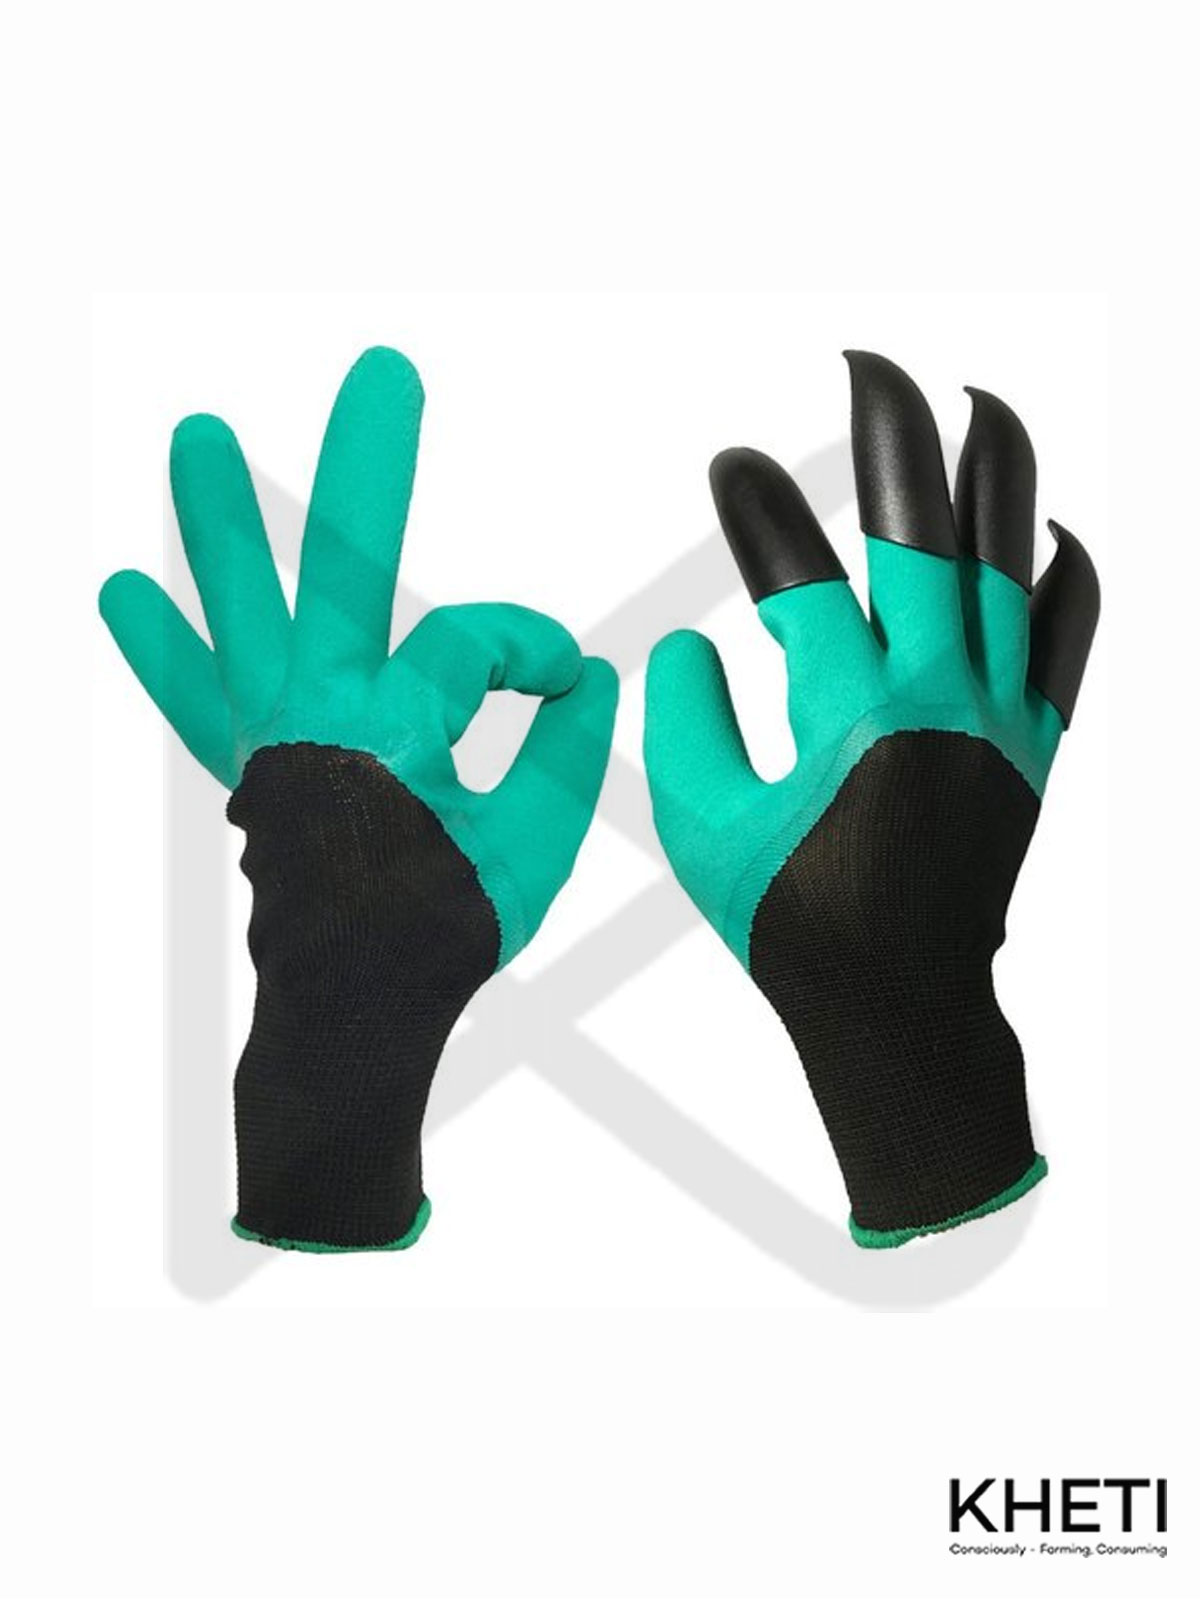 Nailed Gardening Gloves